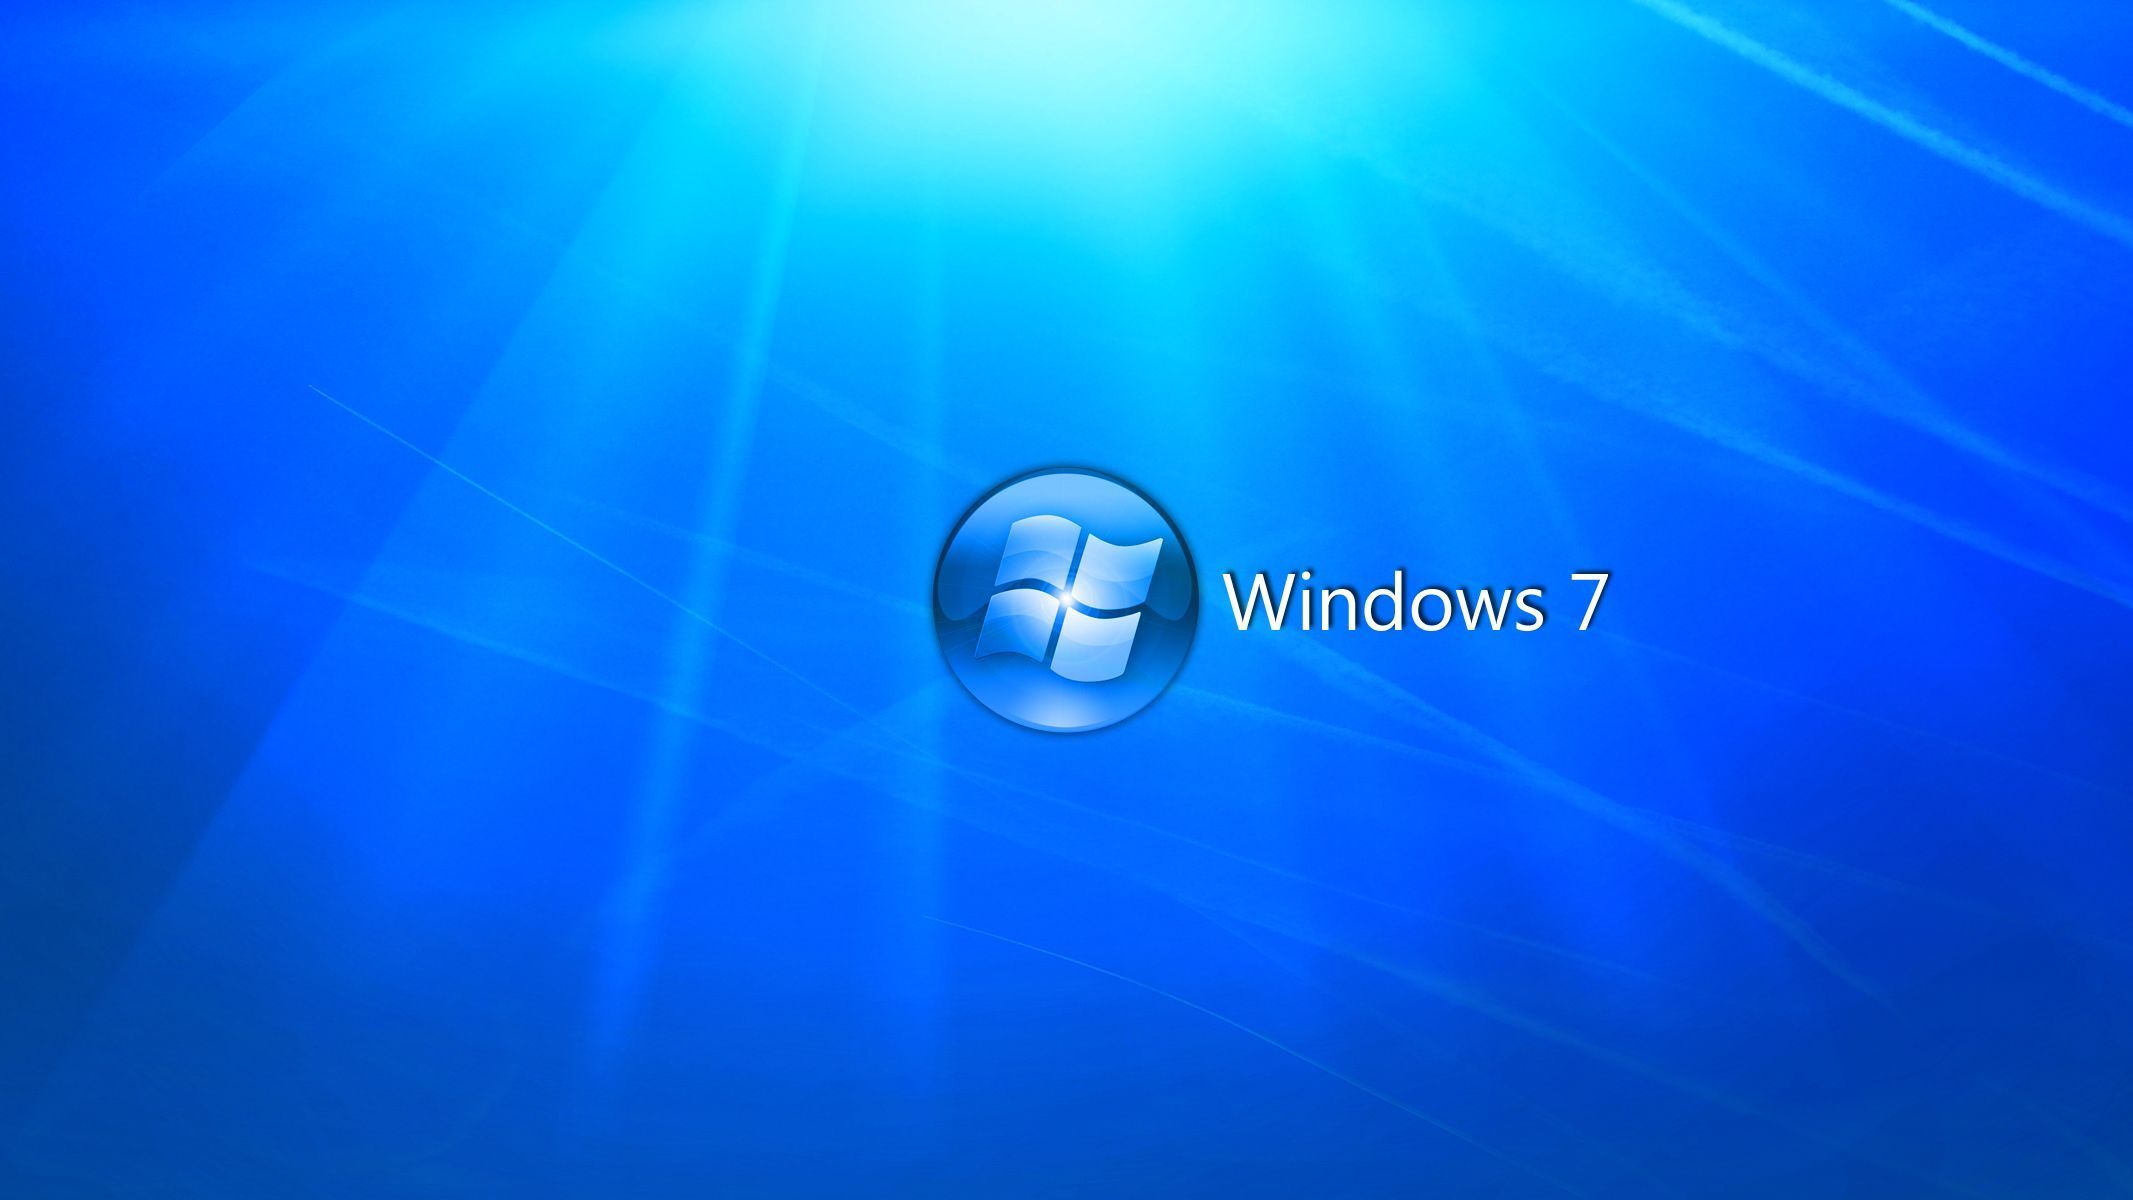 Windows 7 Desktop Background 3 by 4DFuturist on DeviantArt